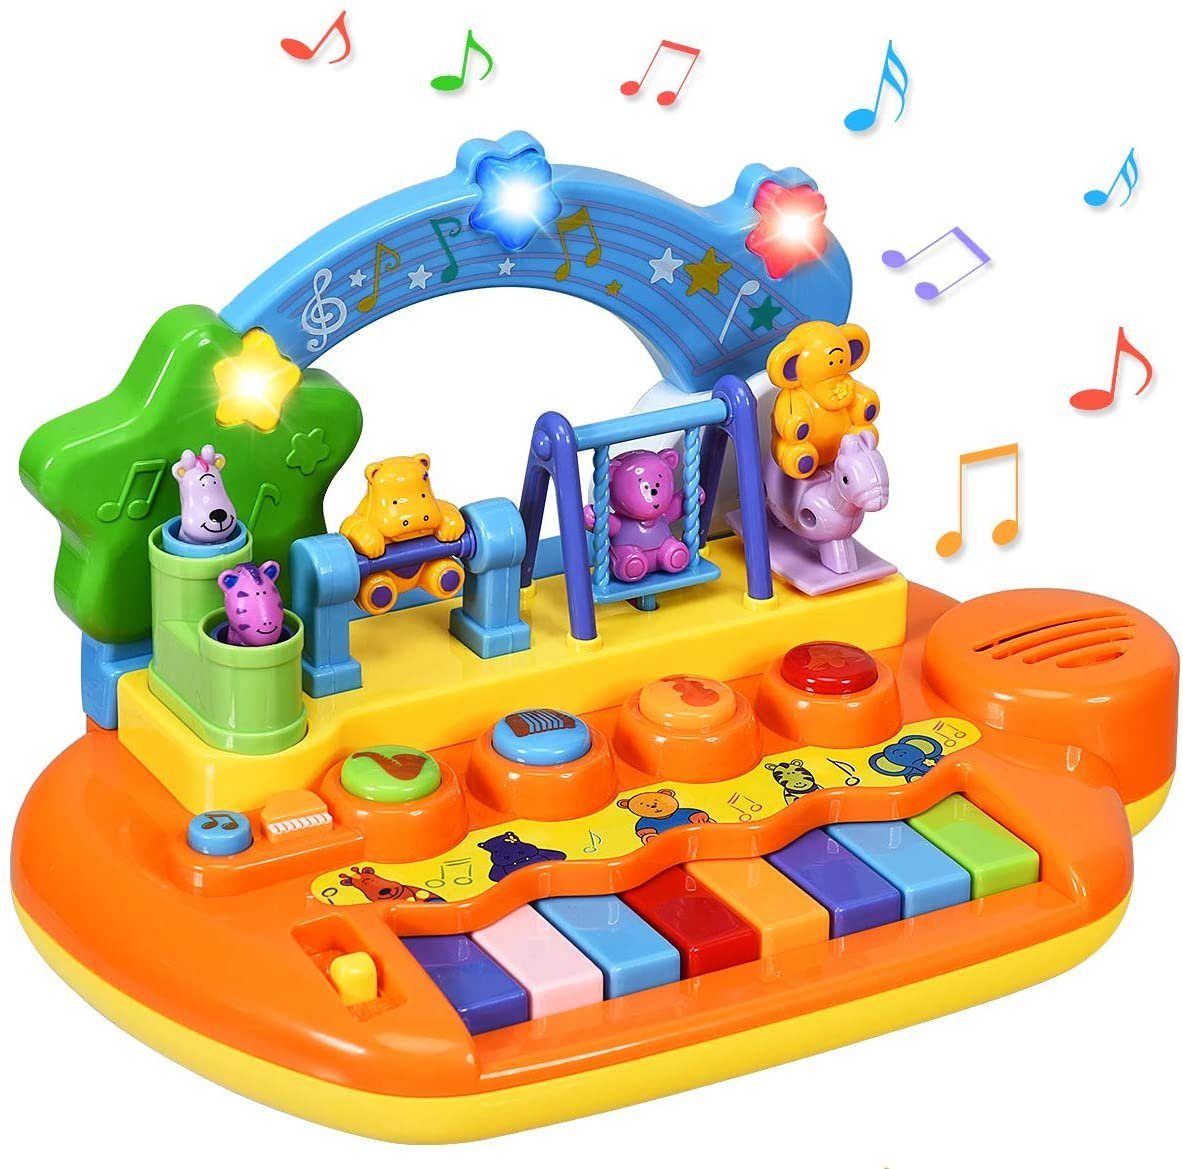 Babyspielzeug Klavier Telefon Geschichte Musik Spielzeug Lernspielzeug Cartoon 